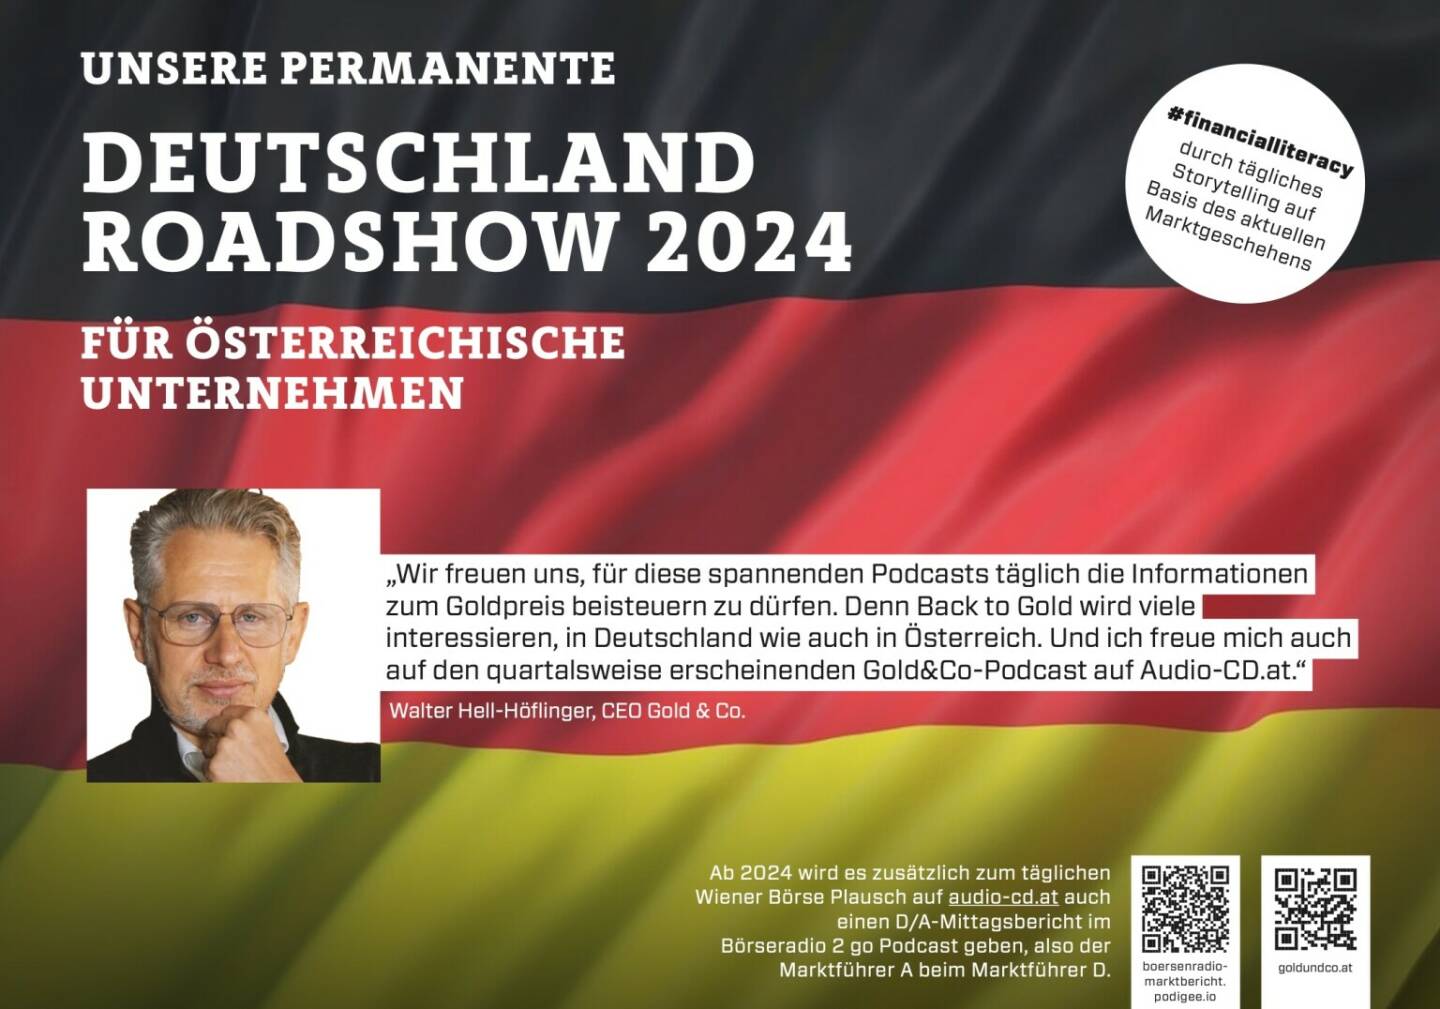 Walter Hell-Höflinger mit Gold&Co 2024 mit uns auf Deutschlandroadshow für https://boersenradio-marktbericht.podigee.io